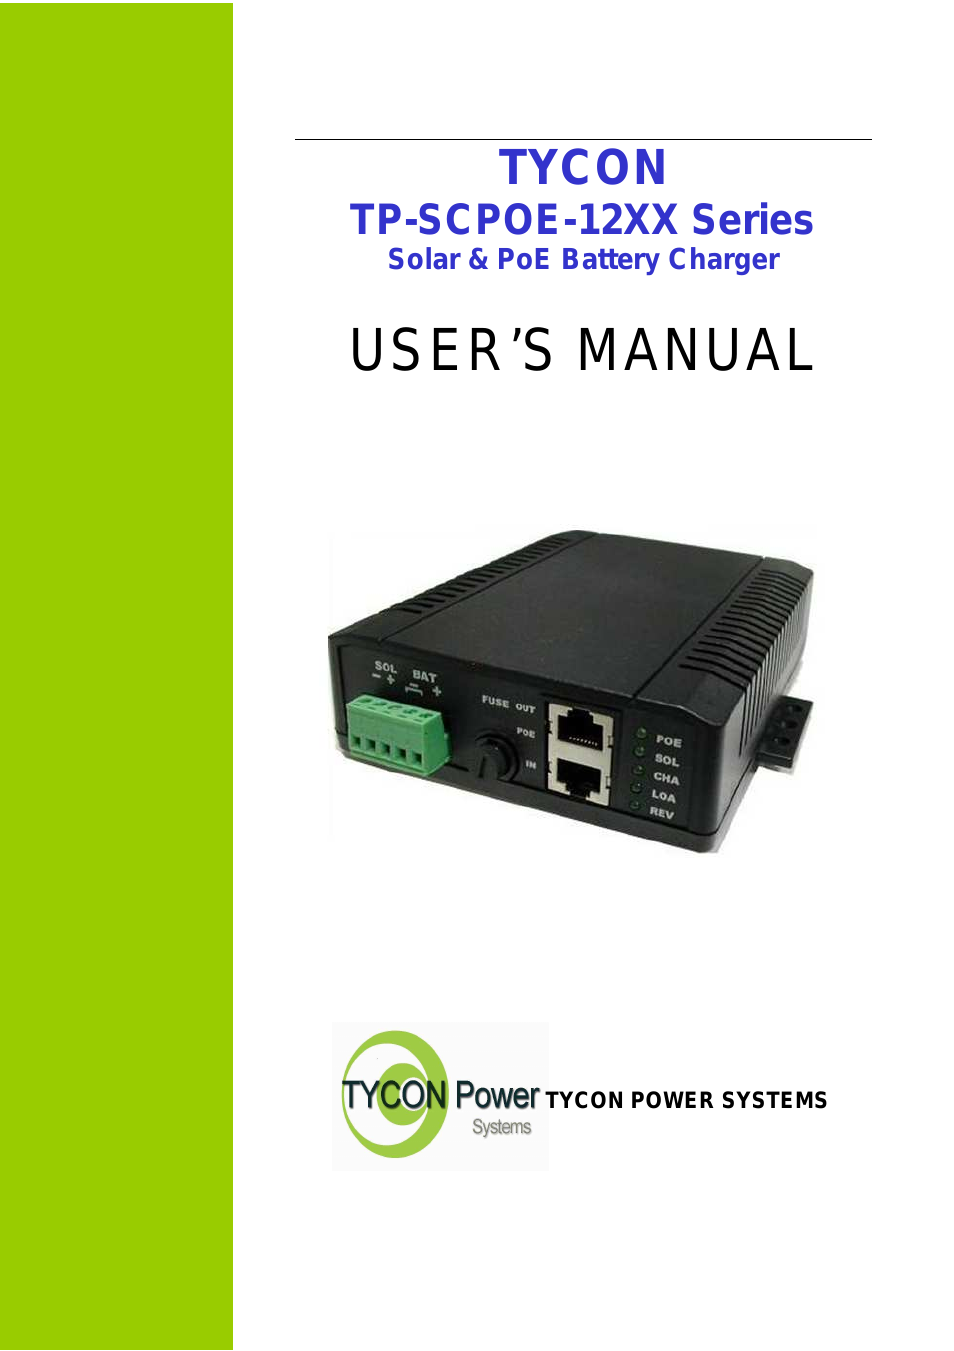 TP-SCPOE-12XX Series